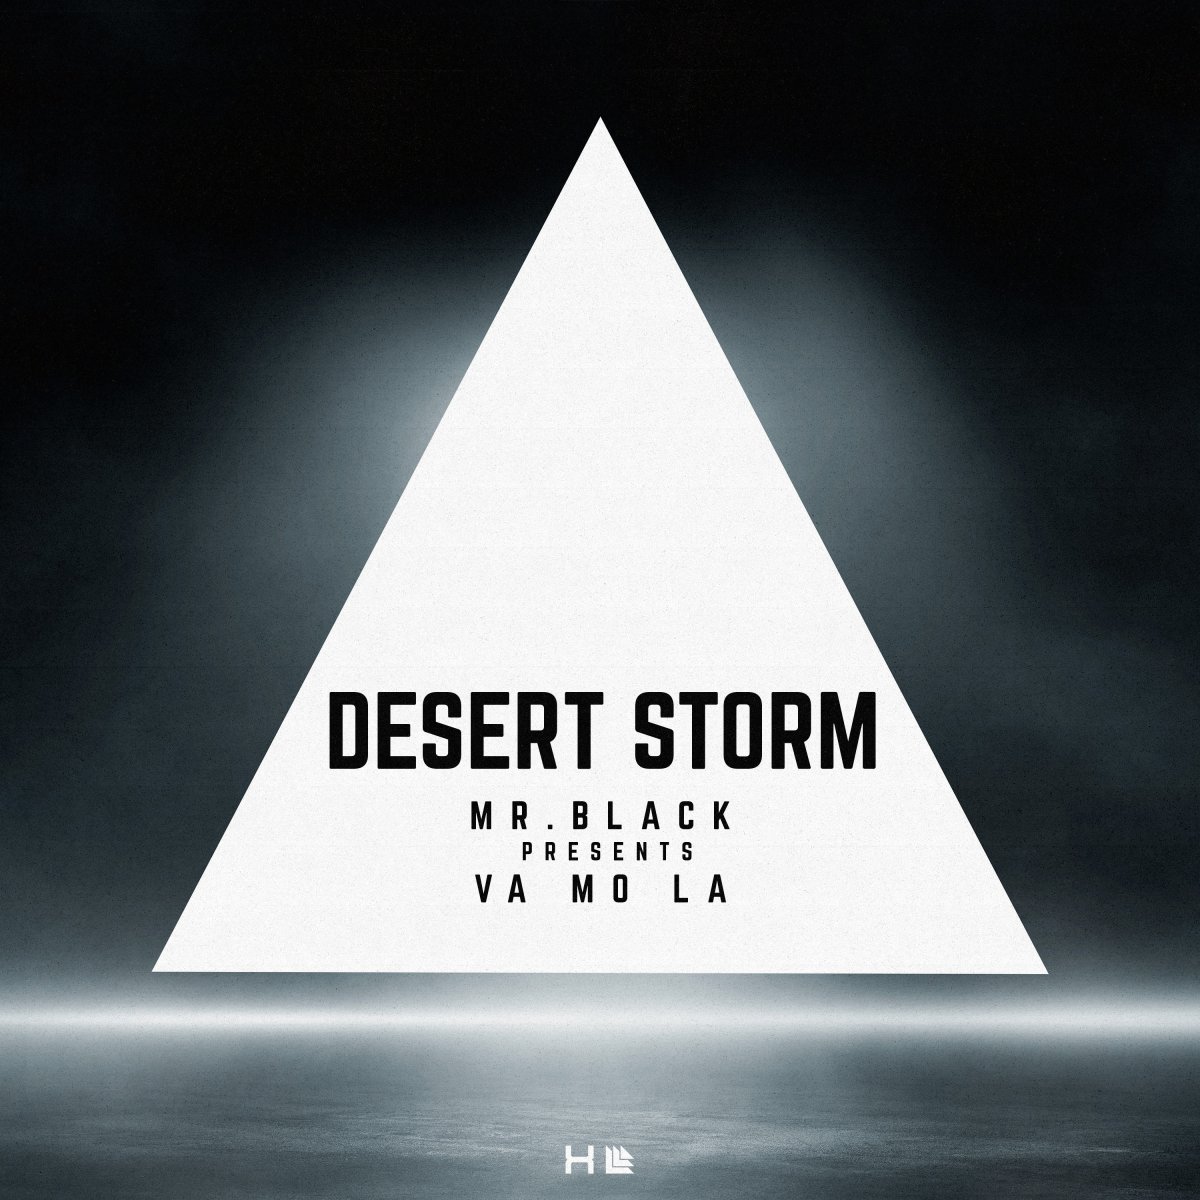 Desert Storm - MR.BLACK⁠ pres. VA MO LA⁠ 